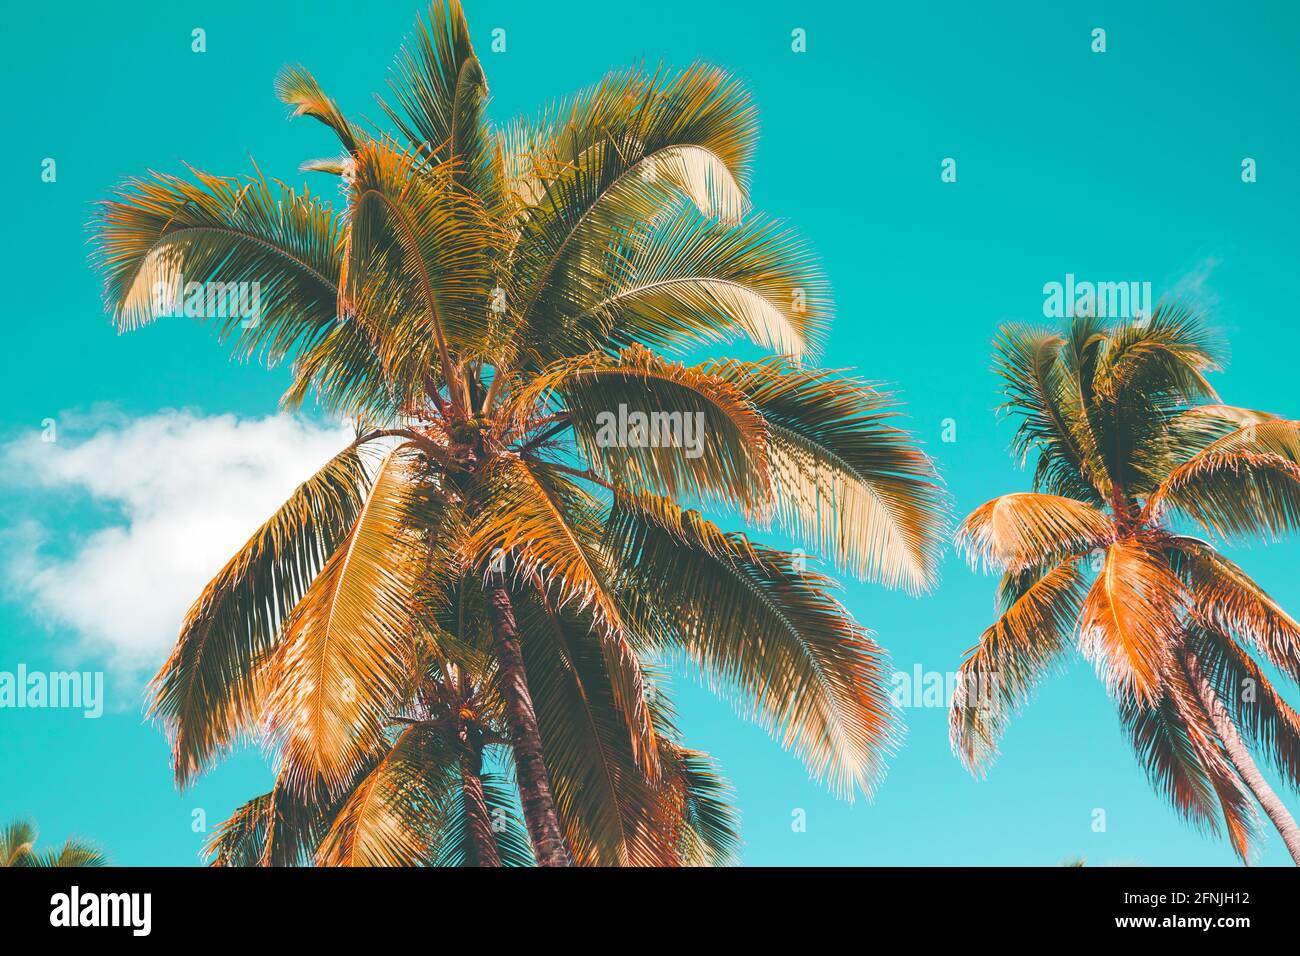 Kokospalmen stehen unter blau bewölktem Himmel, natürliches Hintergrundfoto mit Tonwertkorrektur-Filtereffekt Stockfoto